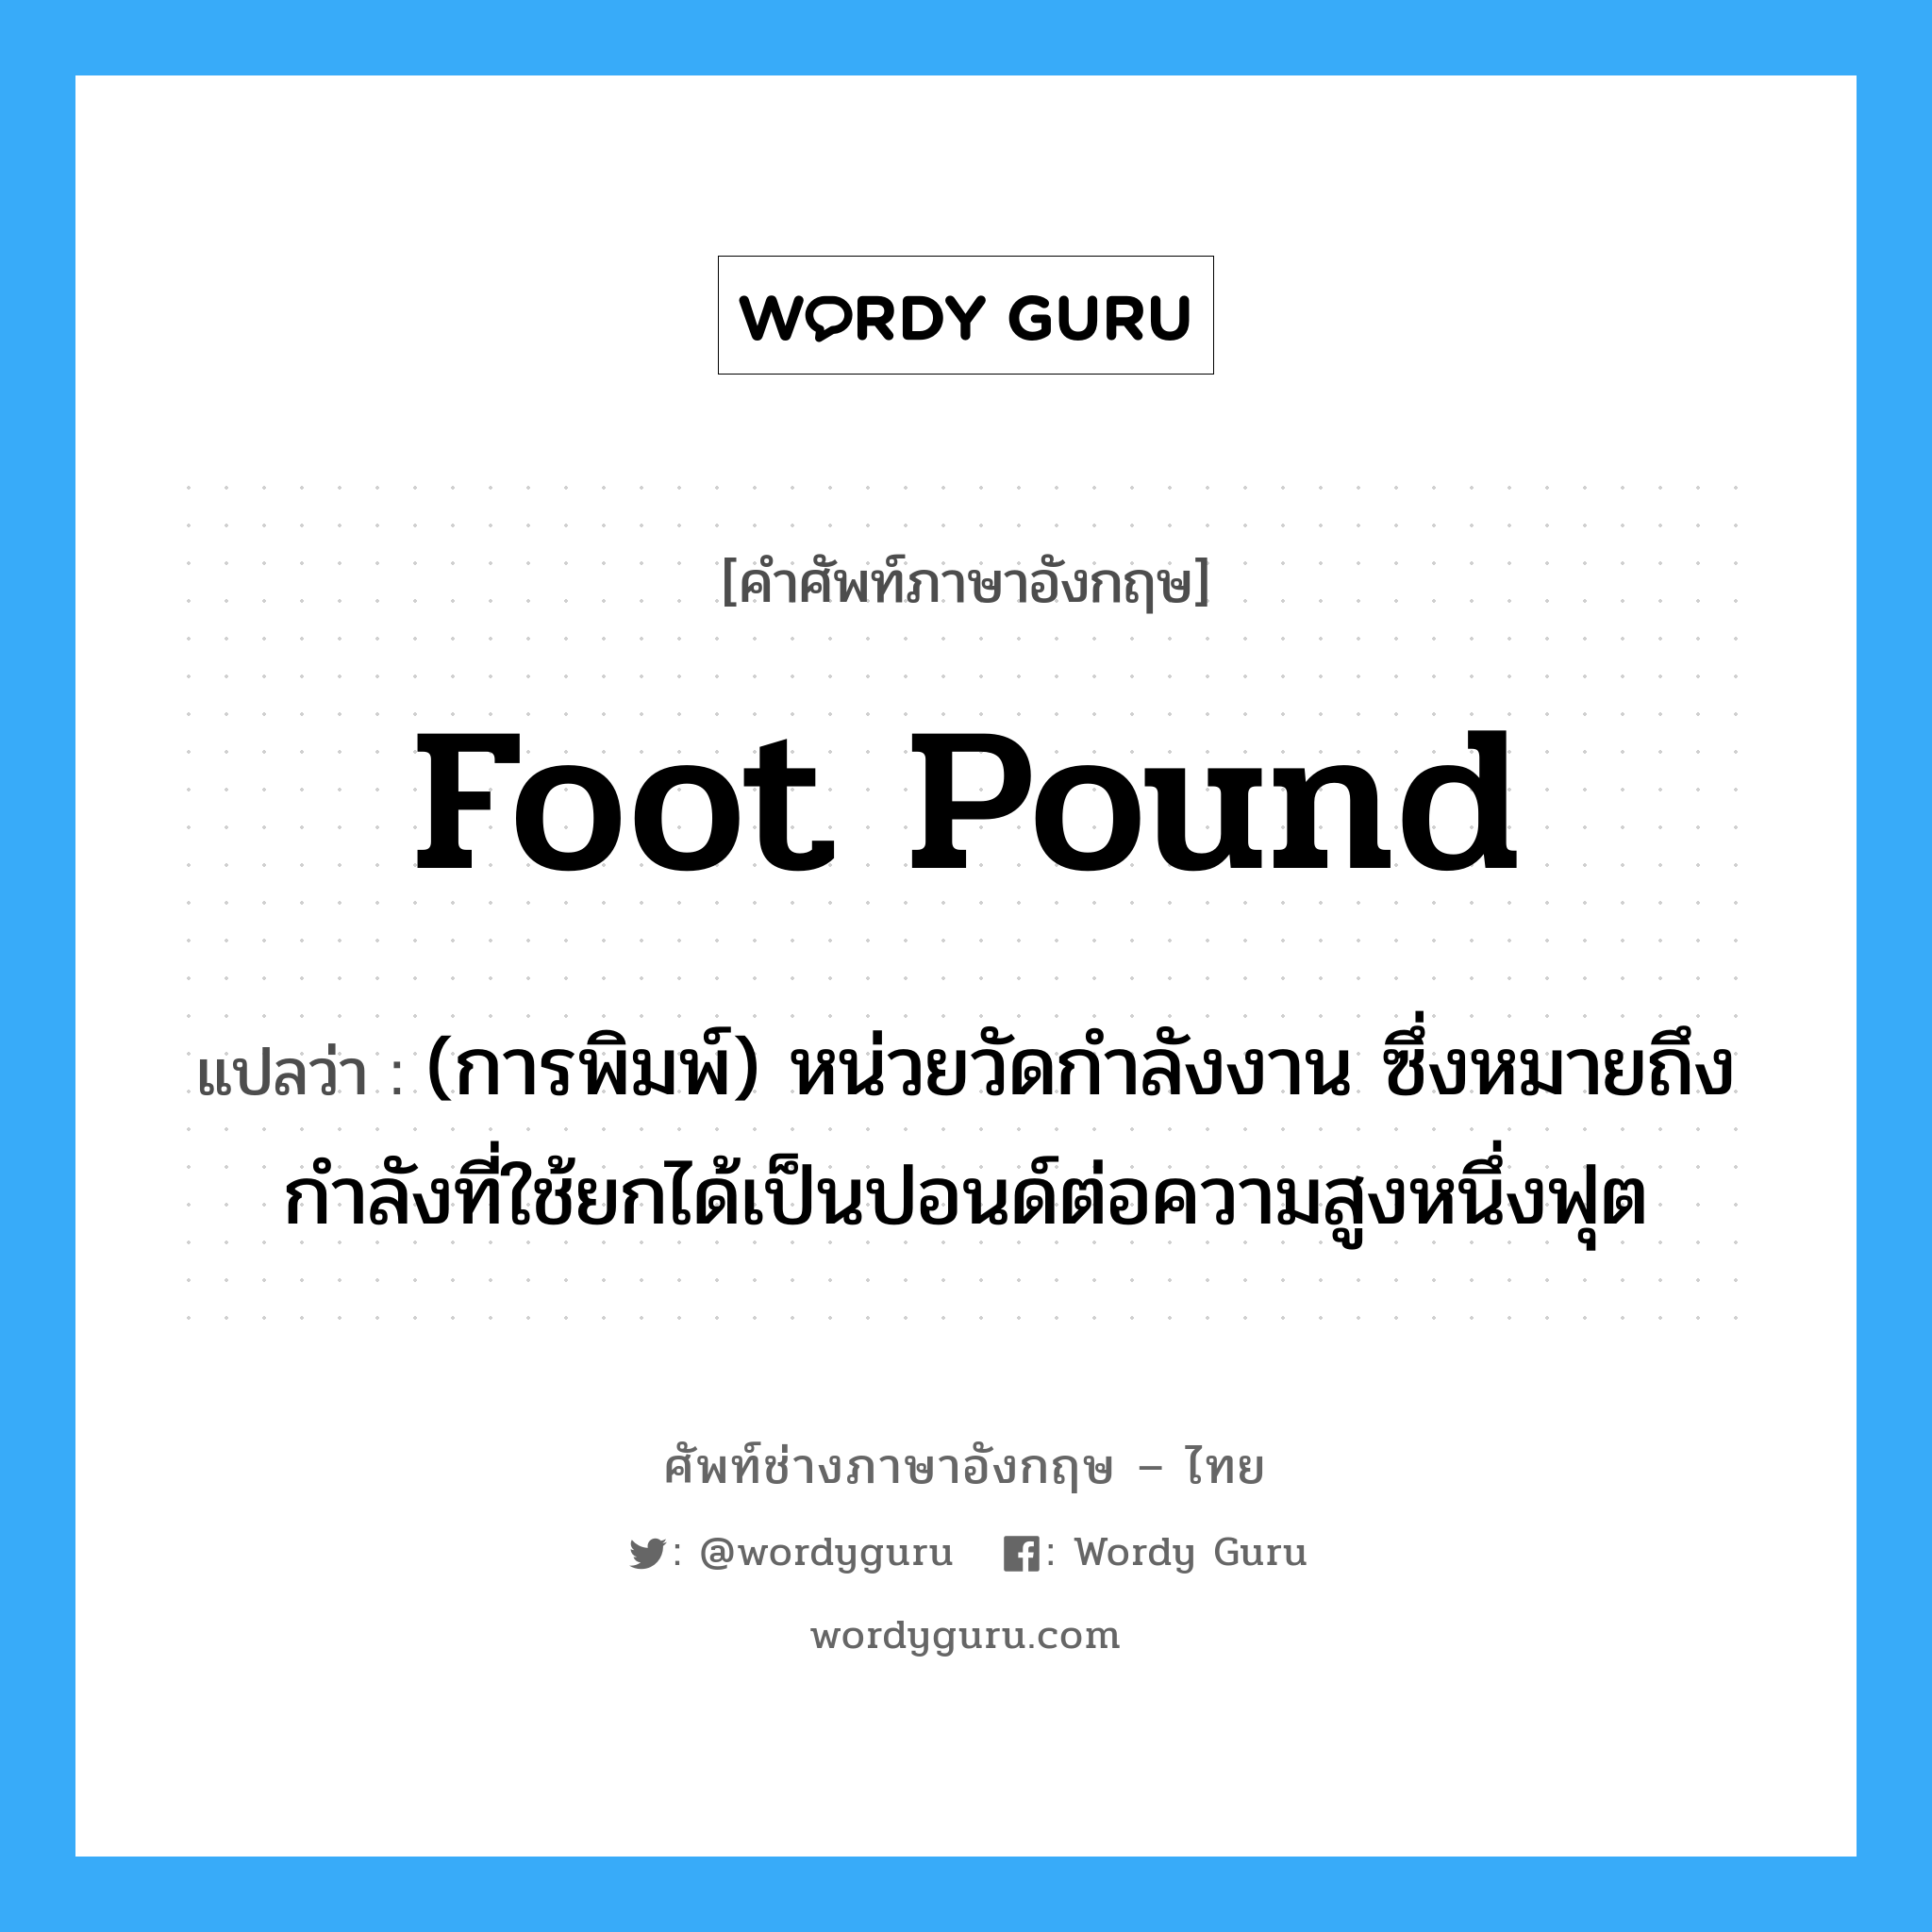 foot-pound แปลว่า?, คำศัพท์ช่างภาษาอังกฤษ - ไทย foot pound คำศัพท์ภาษาอังกฤษ foot pound แปลว่า (การพิมพ์) หน่วยวัดกำลังงาน ซึ่งหมายถึงกำลังที่ใช้ยกได้เป็นปอนด์ต่อความสูงหนึ่งฟุต